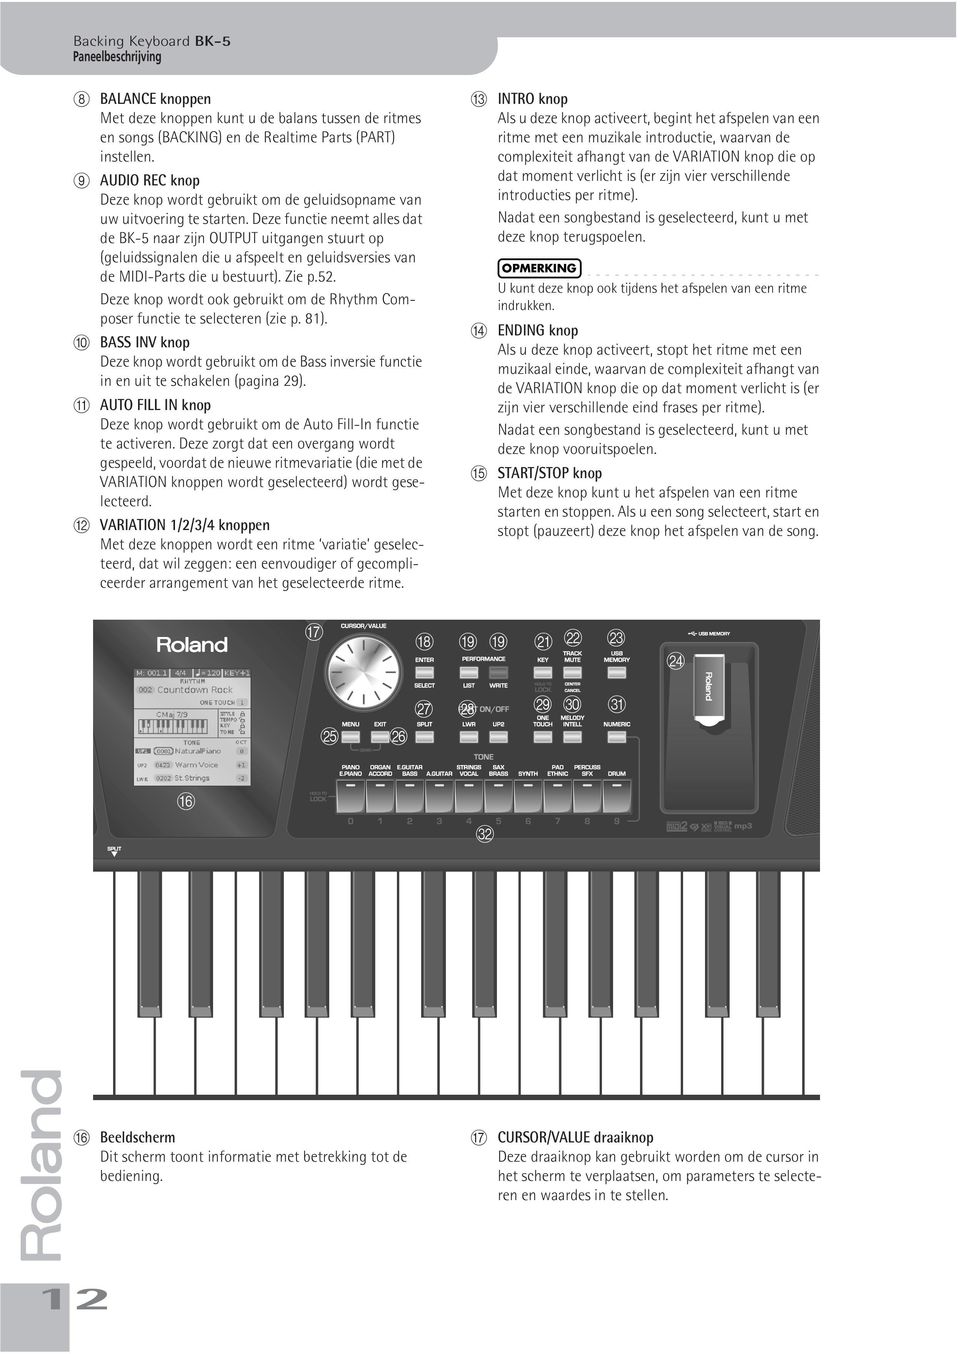 Deze functie neemt alles dat de BK-5 naar zijn OUTPUT uitgangen stuurt op (geluidssignalen die u afspeelt en geluidsversies van de MIDI-Parts die u bestuurt). Zie p.52.